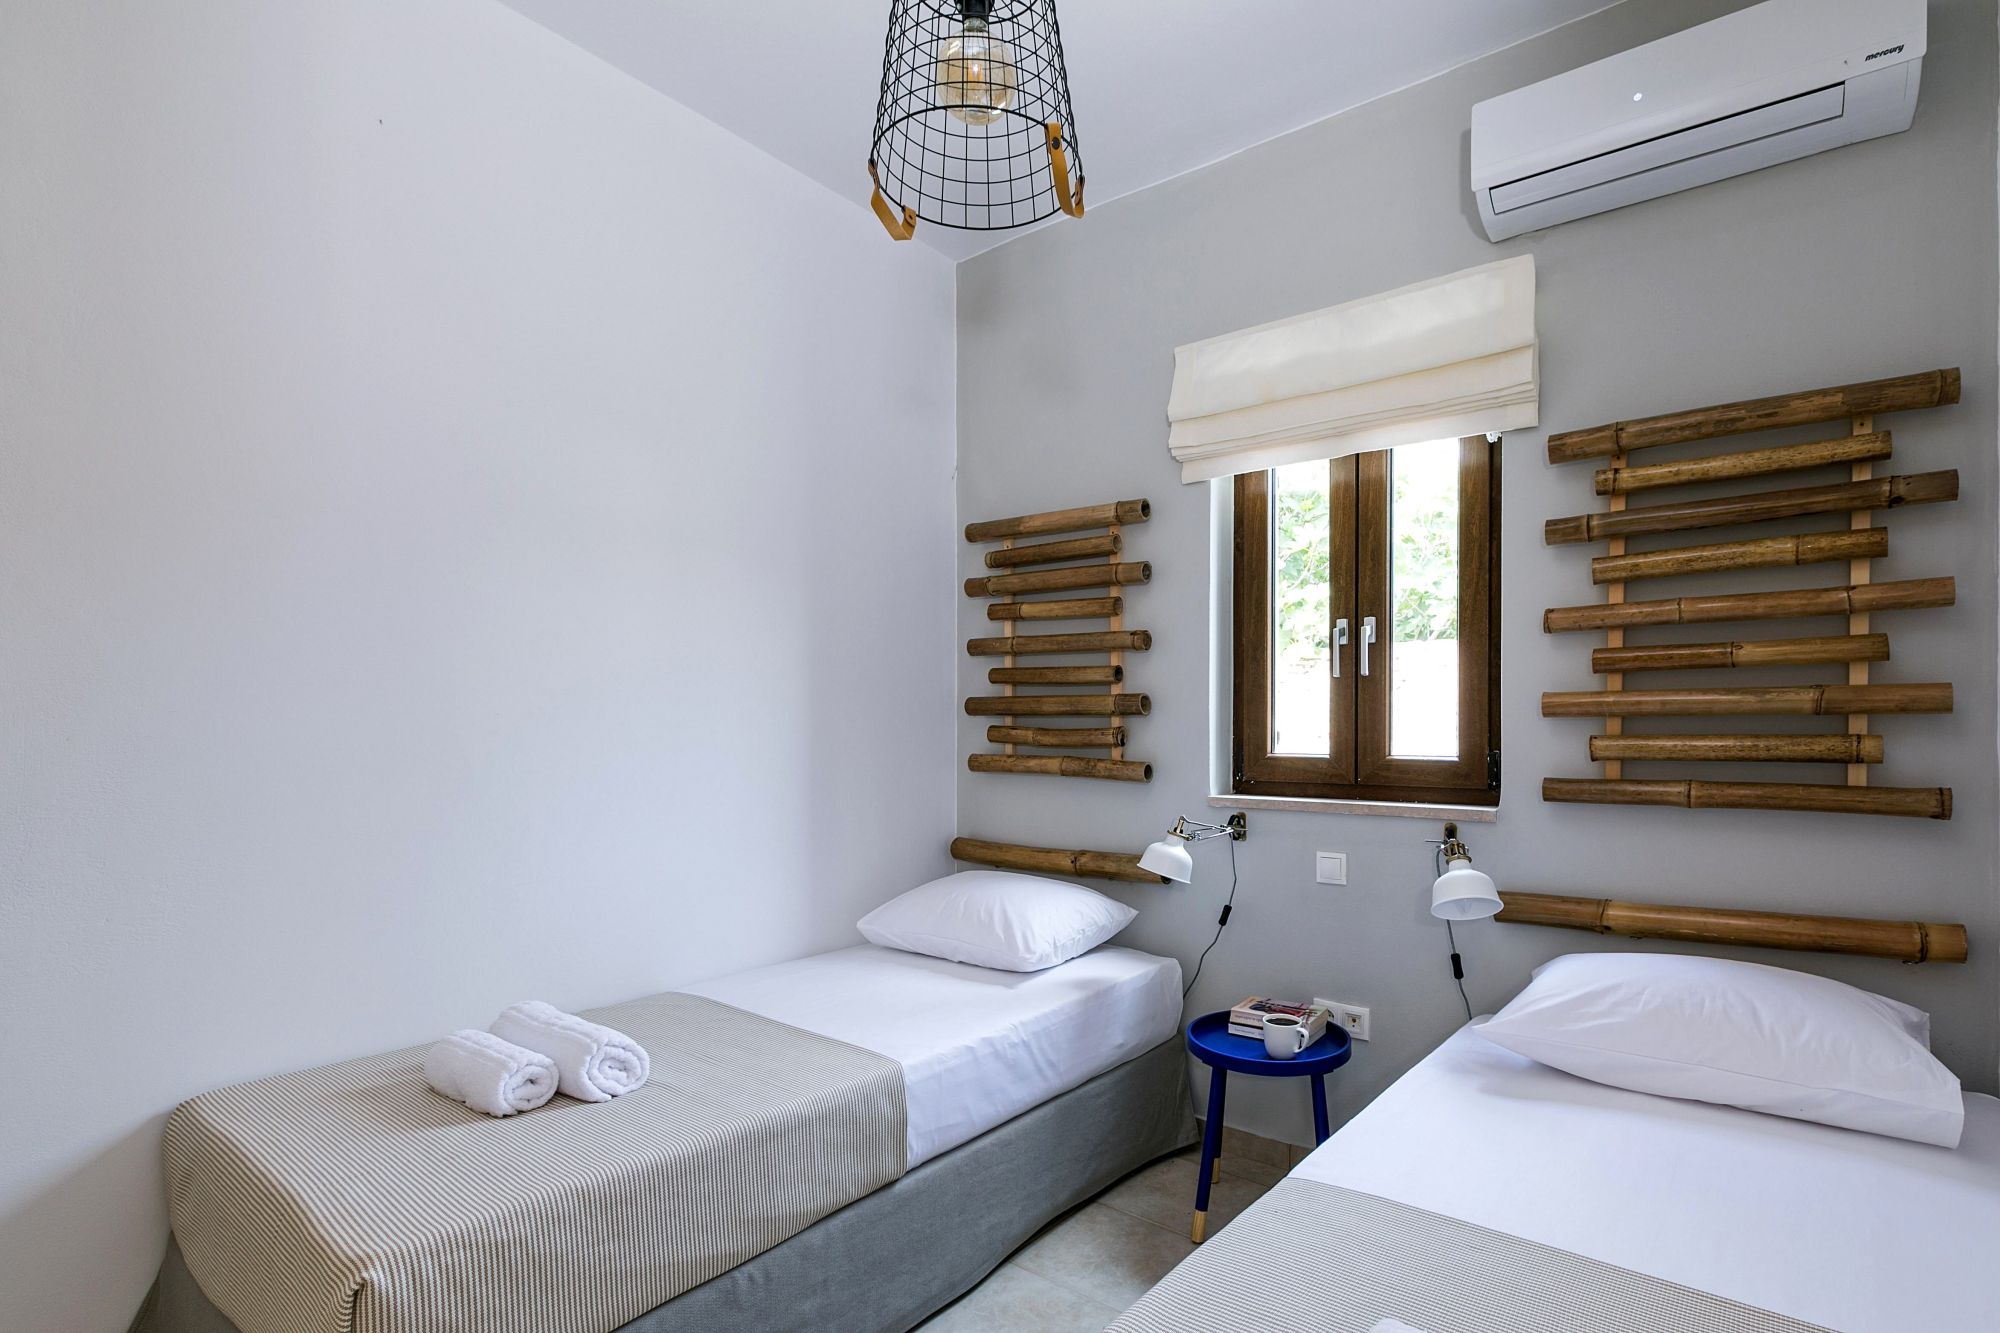 Μοντέρνο υπνοδωμάτιο με δύο μονά κρεβάτια, μεταλλικό μπλε κομοδίνο, λευκά σποτάκια τοίχου, καφέ ιστούς μπαμπού πάνω από τα κρεβάτια και ένα παράθυρο ανάμεσα.